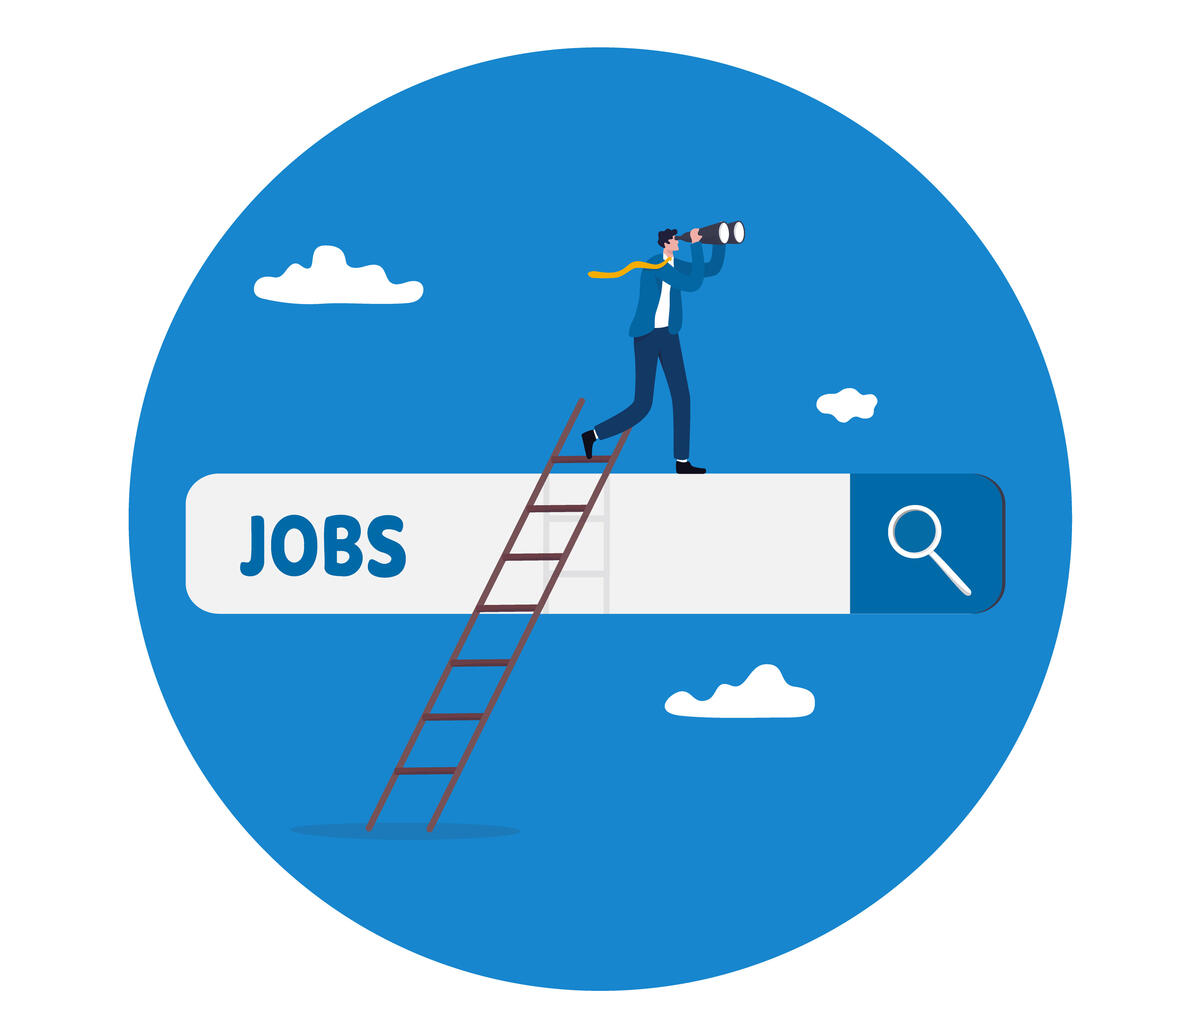 Vektorgrafik: Suchbegriff "Jobs" mit Leiter und einer Person, die am Ende der Leiter steht mit Fernglas in der Hand.